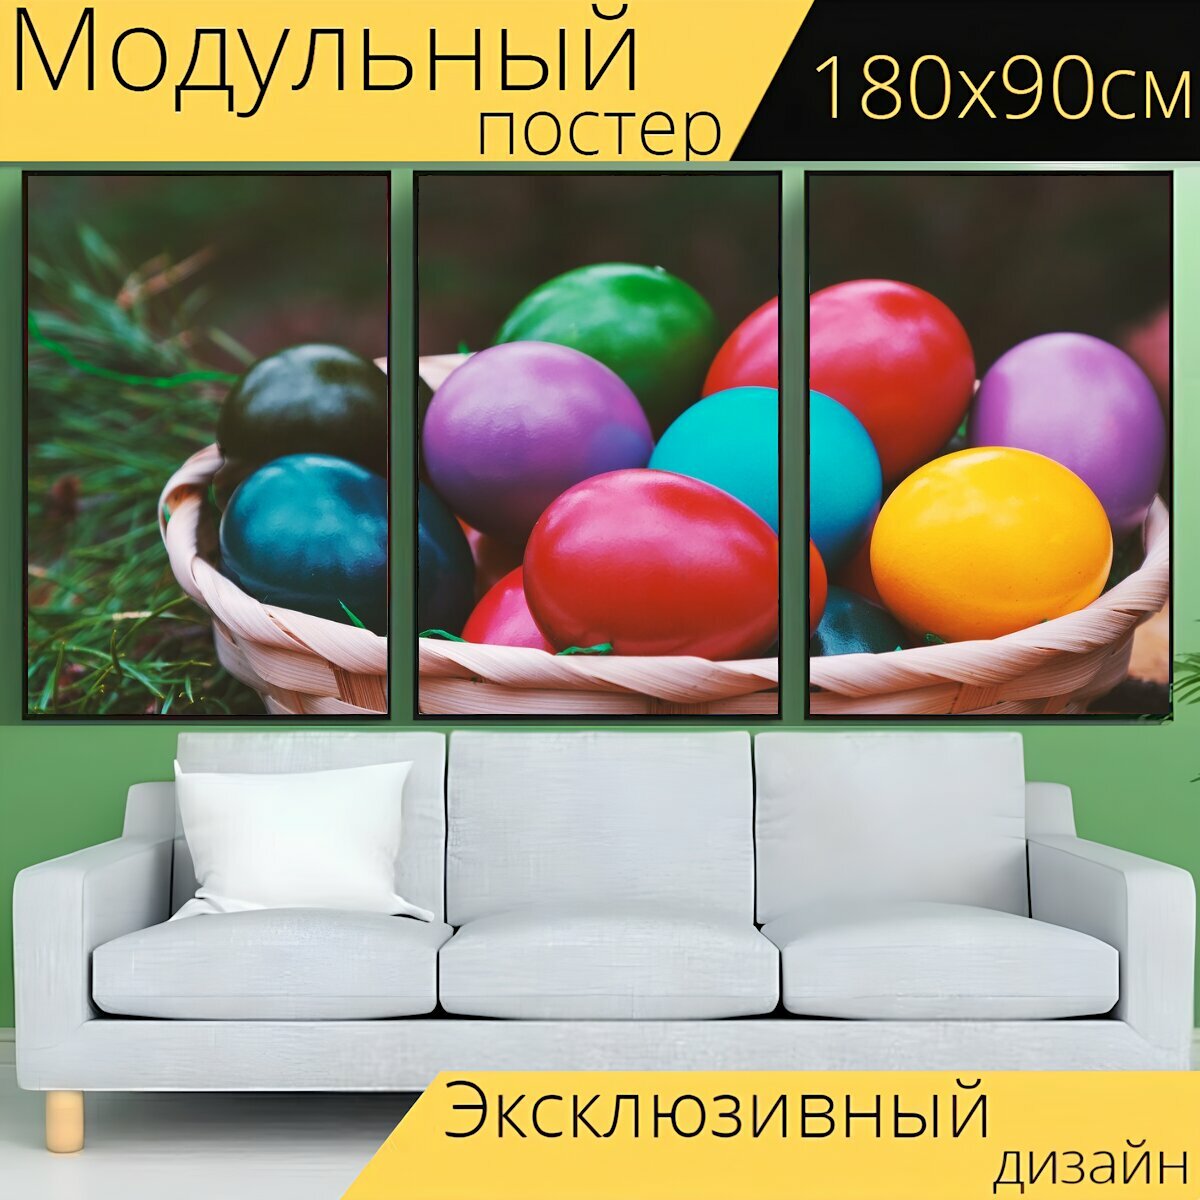 Модульный постер "Пасхальный, яйца, пасхальные яйца" 180 x 90 см. для интерьера